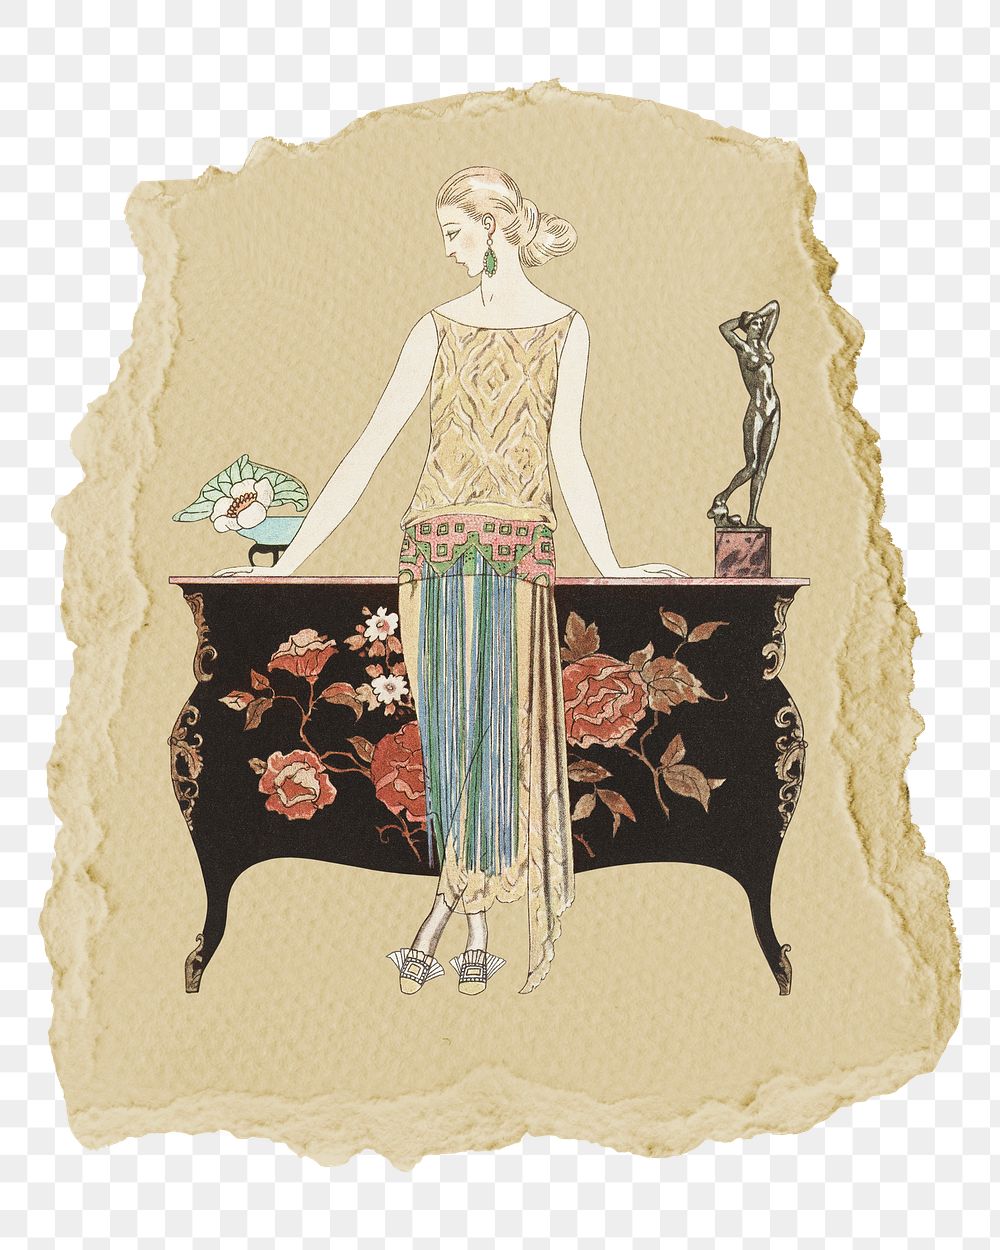 Png Rosalinde: Robe du soir sticker, George Barbier's vintage illustration on ripped paper, transparent background